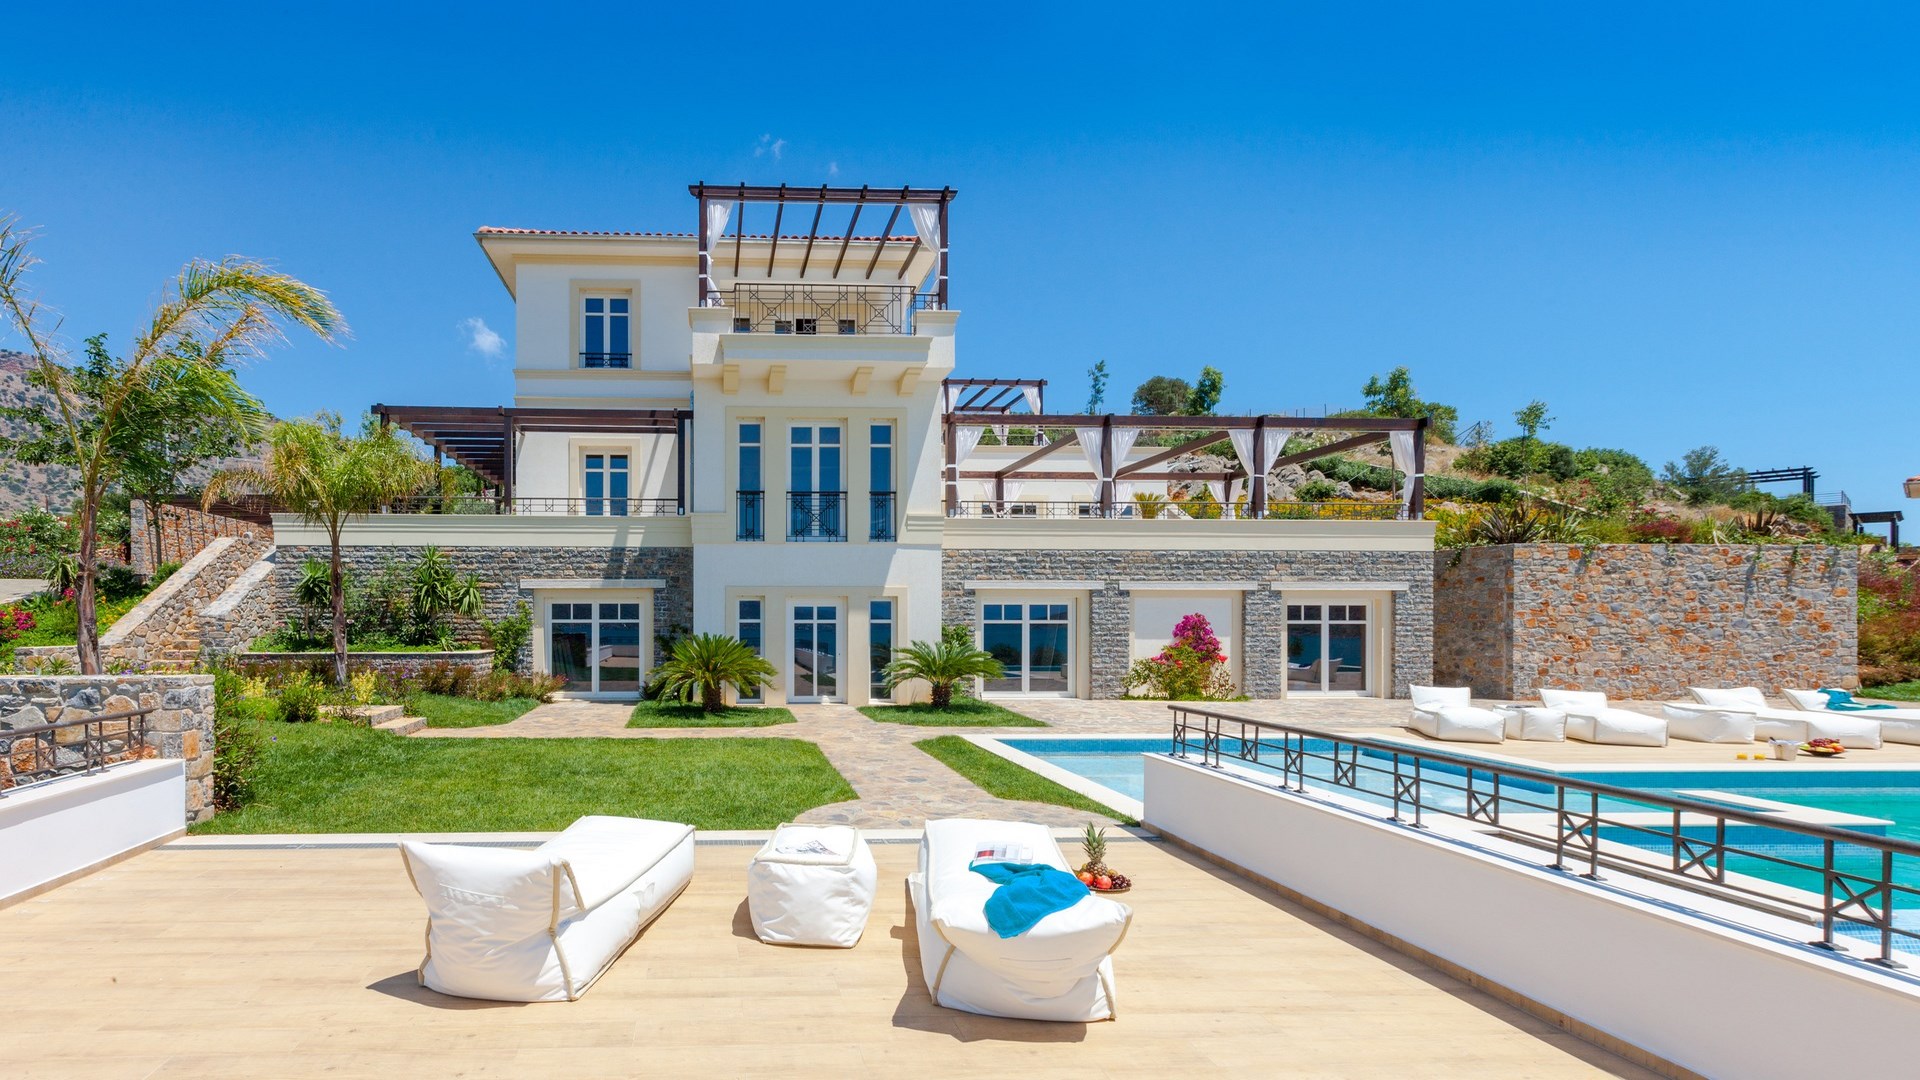 Villa in Elounda on the island Crete